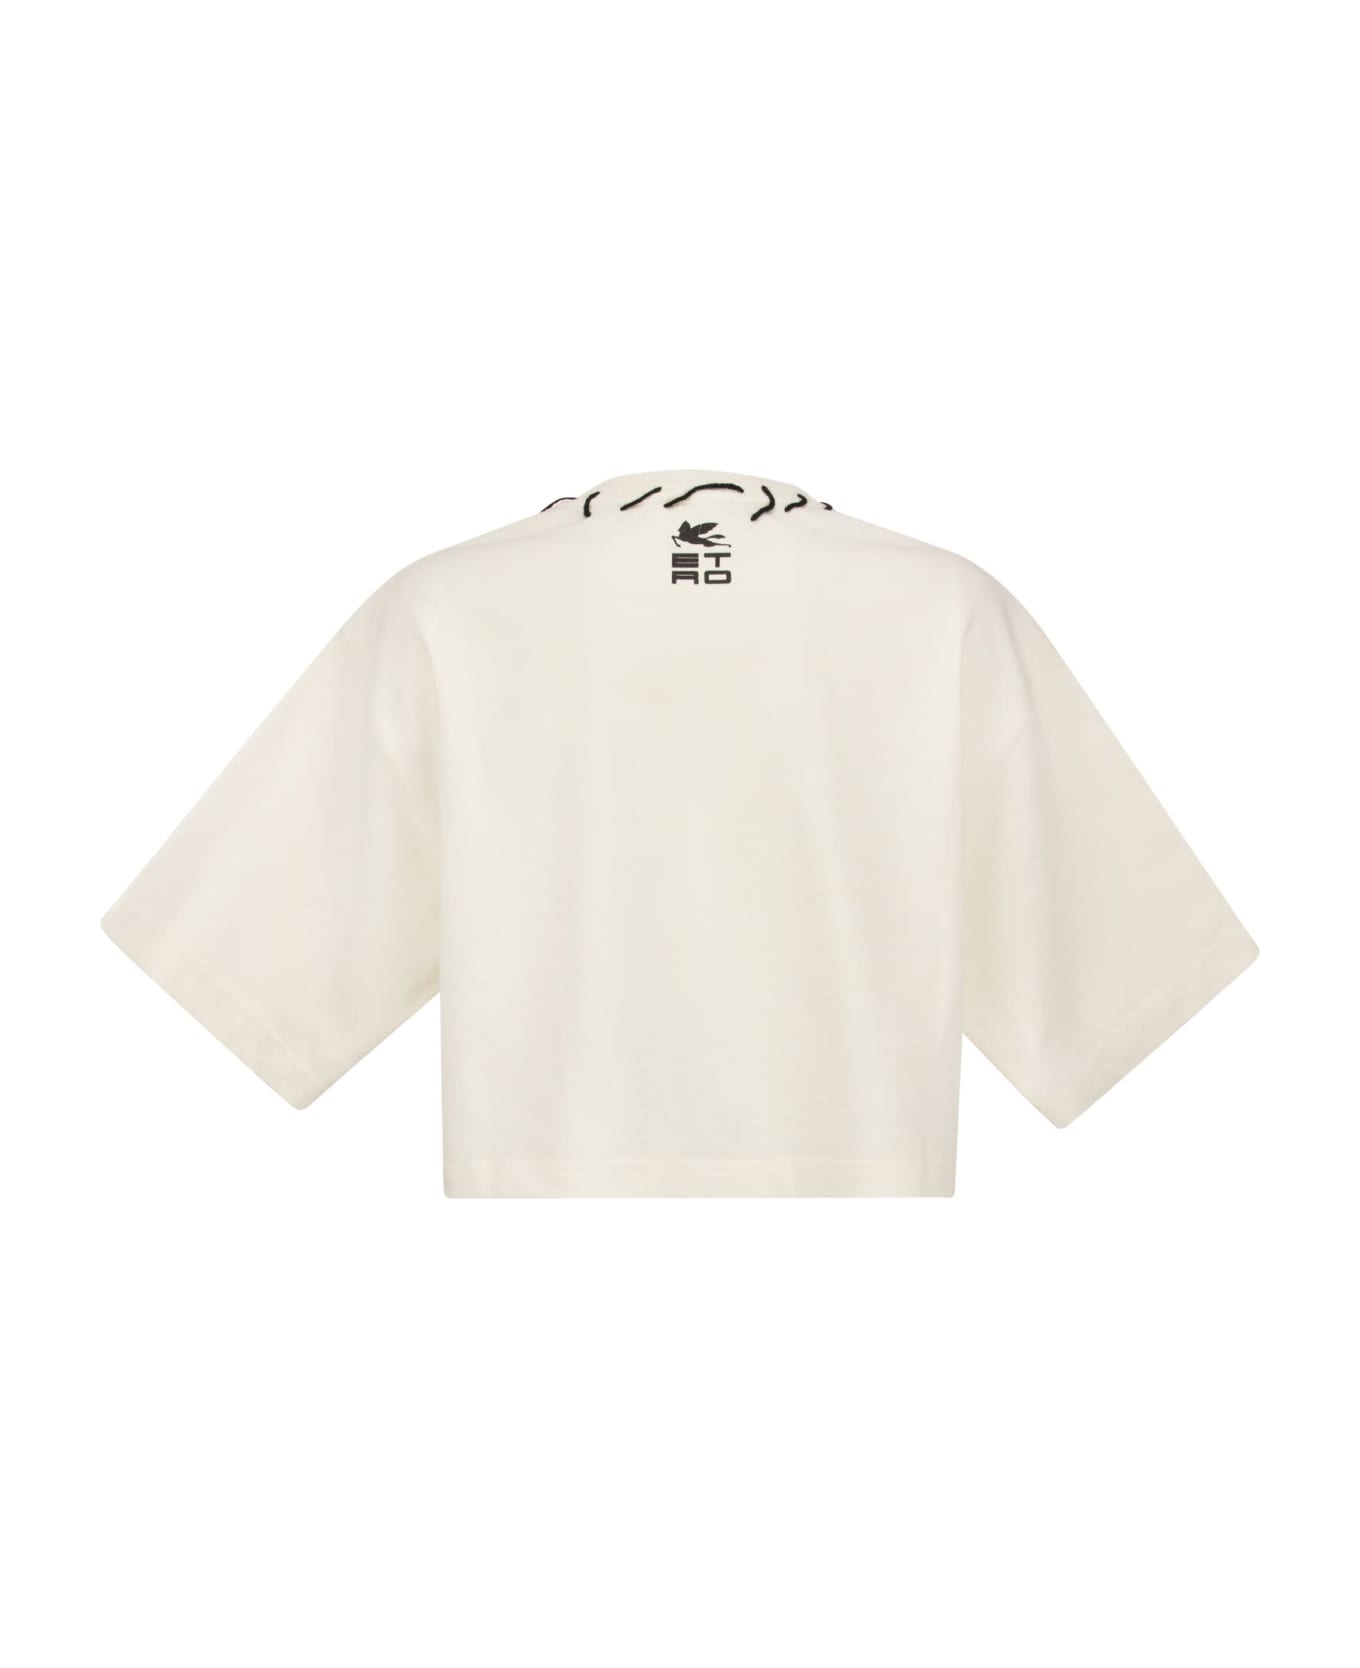 Etro Pegasus T-shirt And Etro Cube Logo - White